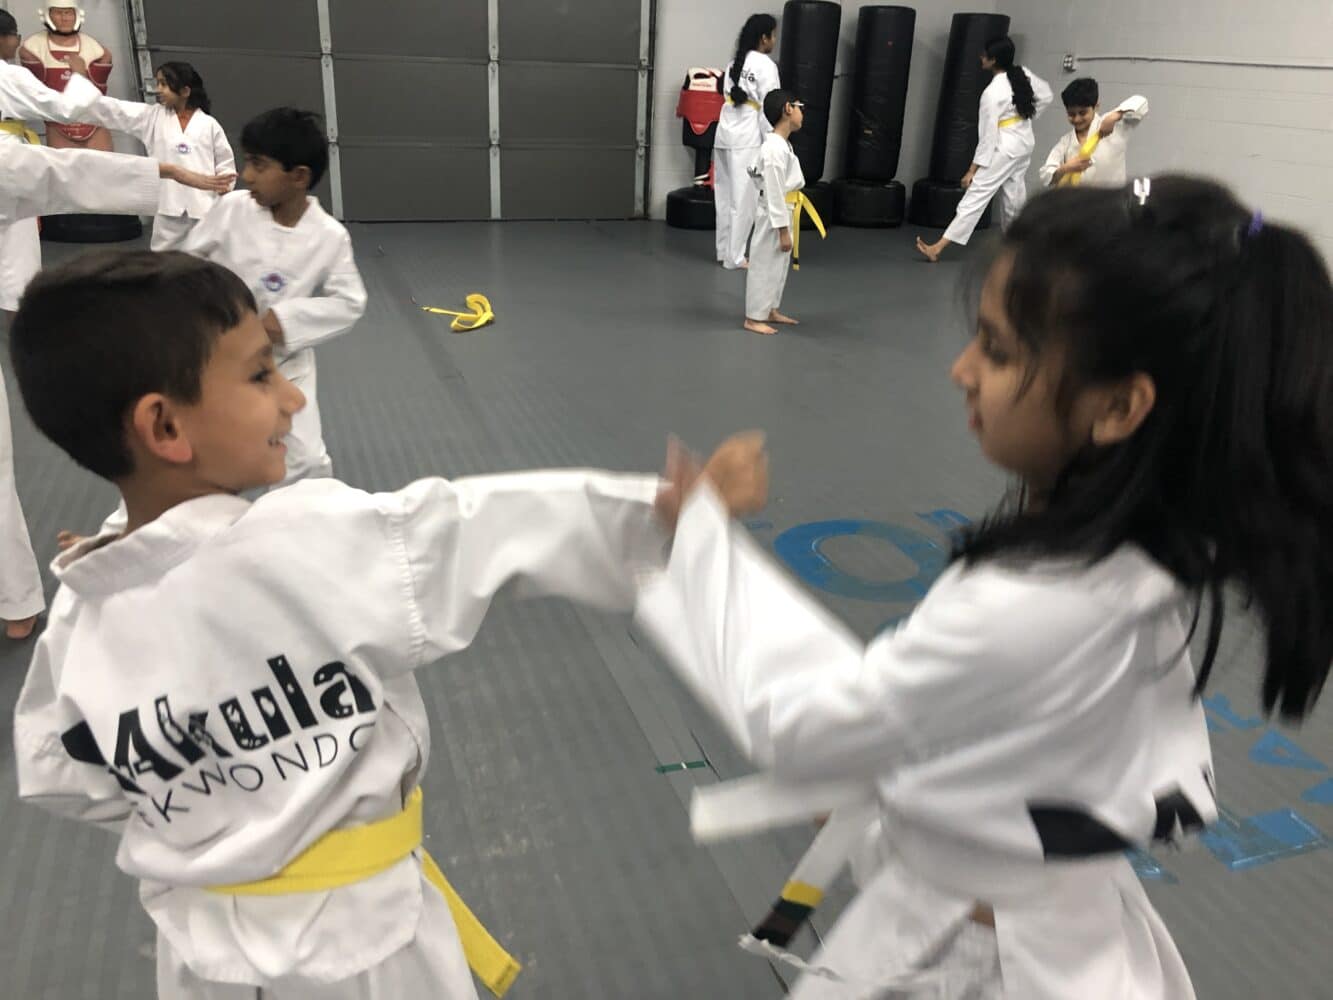 Smiling boy and girl practice self-defense drills at Akula Taekwondo